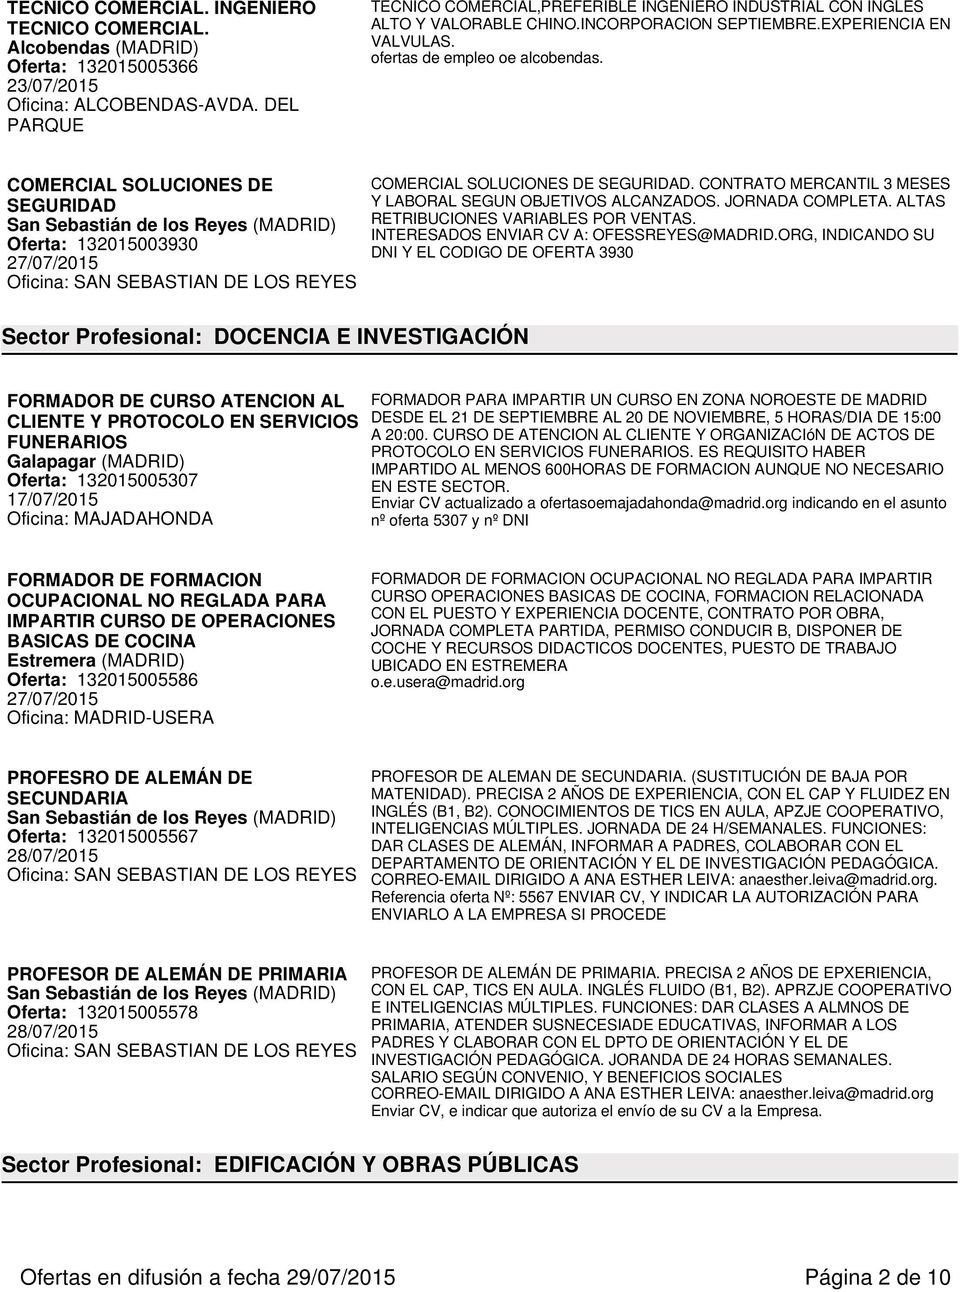 COMERCIAL SOLUCIONES DE SEGURIDAD San Sebastián de los Reyes (MADRID) Oferta: 132015003930 COMERCIAL SOLUCIONES DE SEGURIDAD. CONTRATO MERCANTIL 3 MESES Y LABORAL SEGUN OBJETIVOS ALCANZADOS.